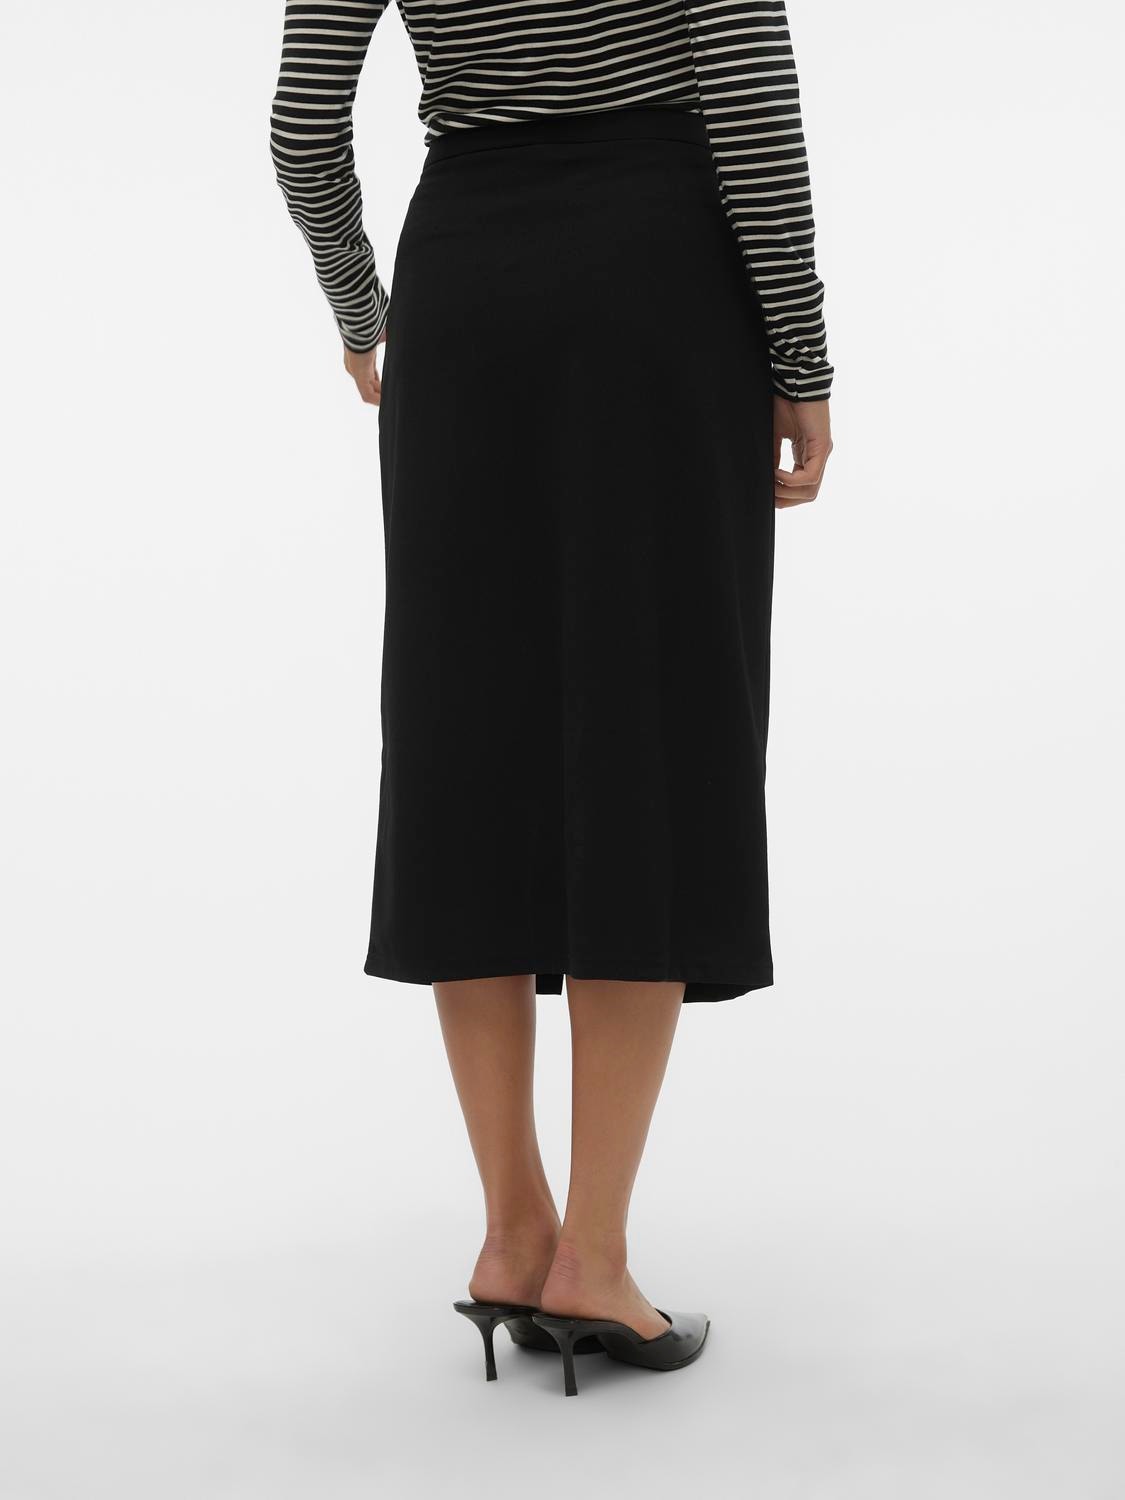 Vero Moda VMCUBA Long Skirt -Black - 10302484